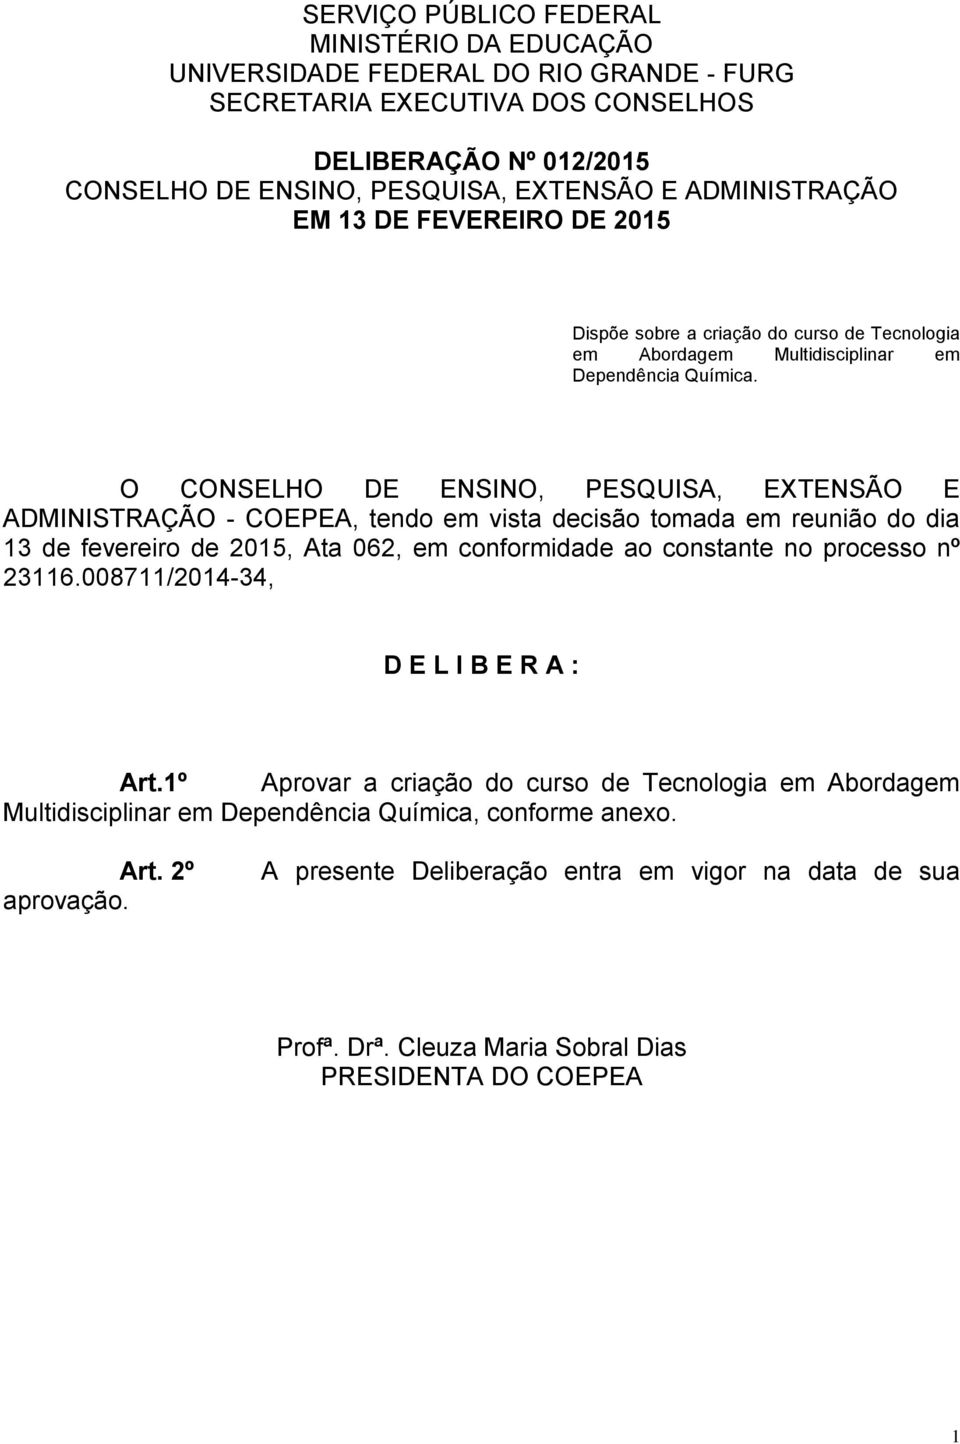 O CONSELHO DE ENSINO, PESQUISA, EXTENSÃO E ADMINISTRAÇÃO - COEPEA, tendo em vista decisão tomada em reunião do dia 13 de fevereiro de 2015, Ata 062, em conformidade ao constante no processo nº 23116.